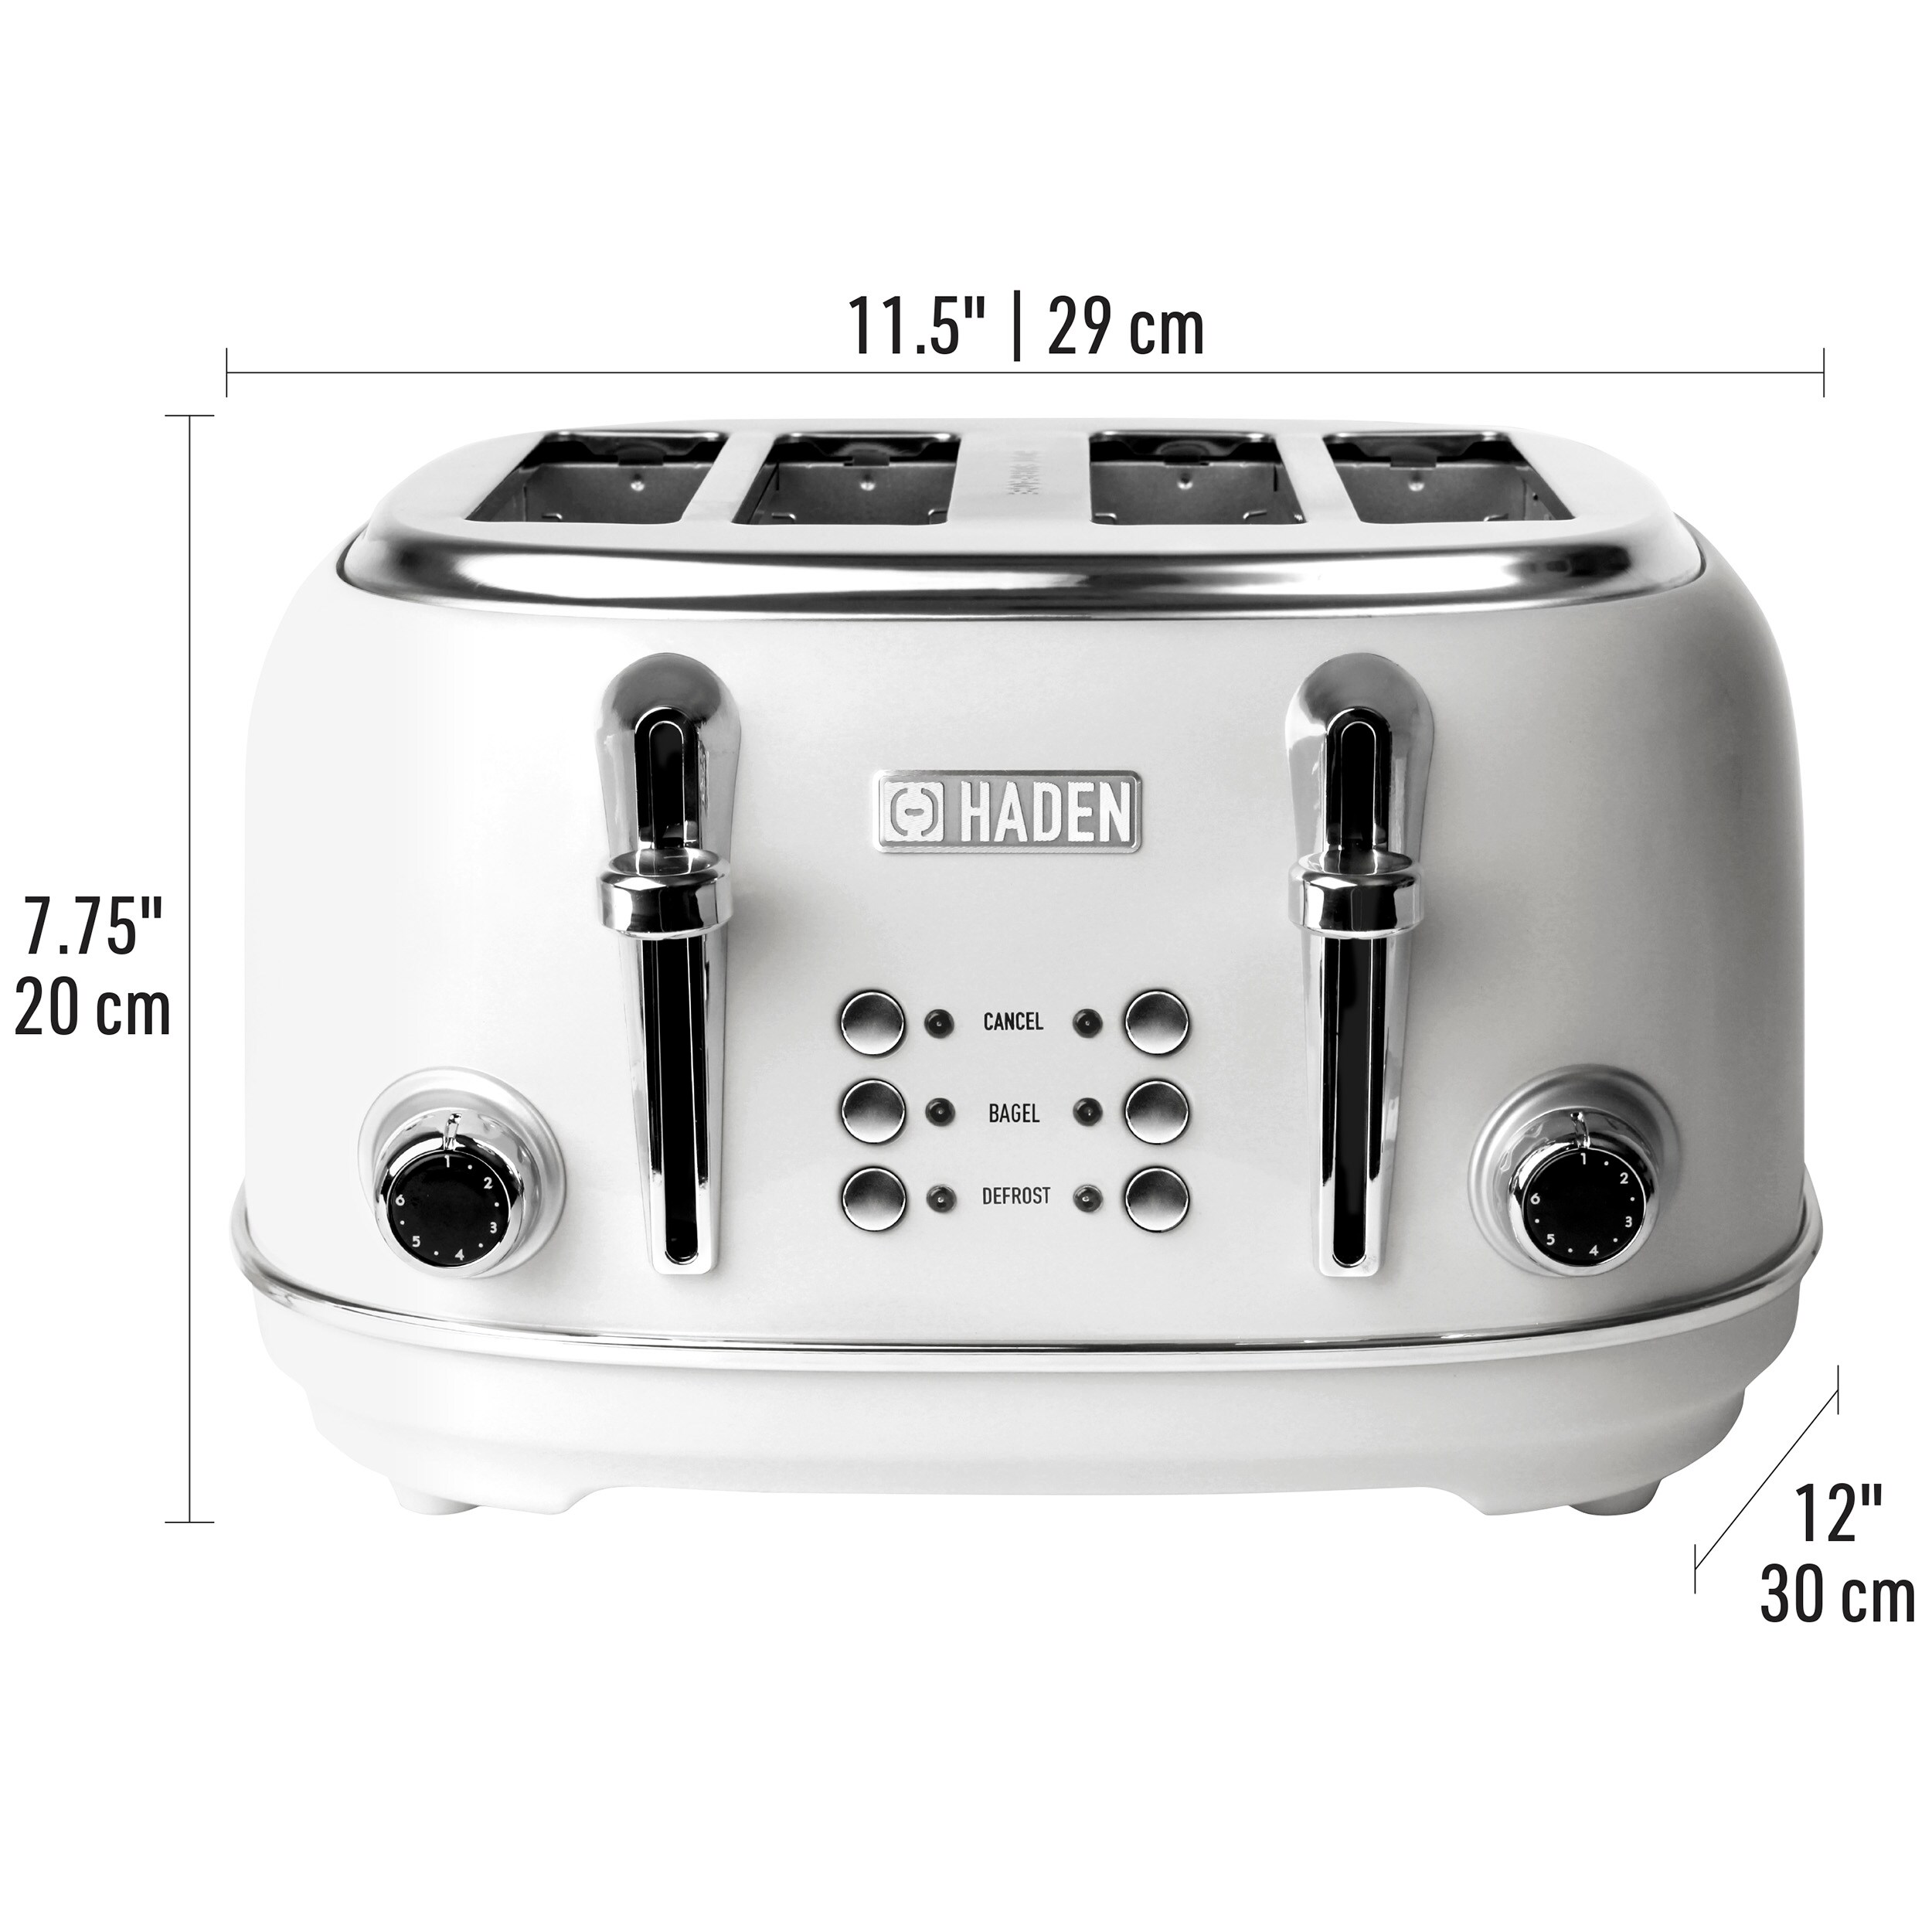 Chefman 4-Slice Stainless Steel 1500-Watt Toaster in the Toasters